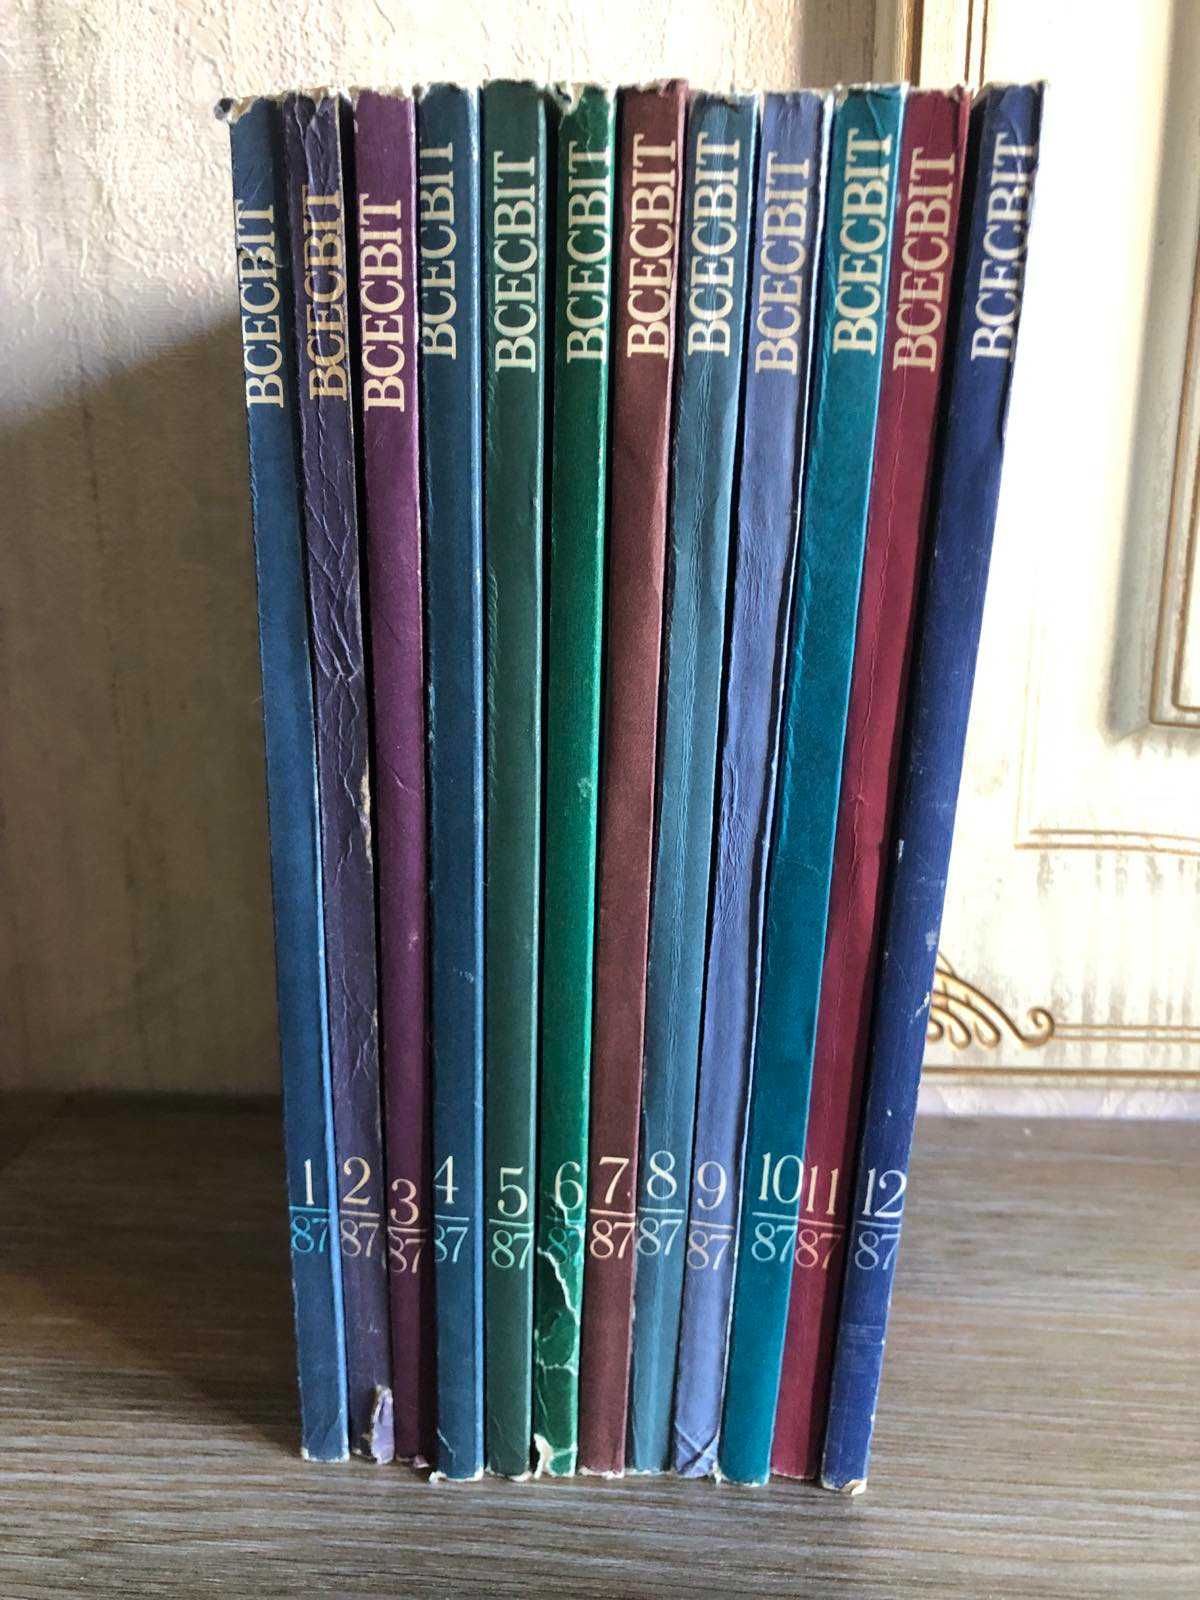 Всесвіт український журнал іноземної літератури 12 номерів 1987